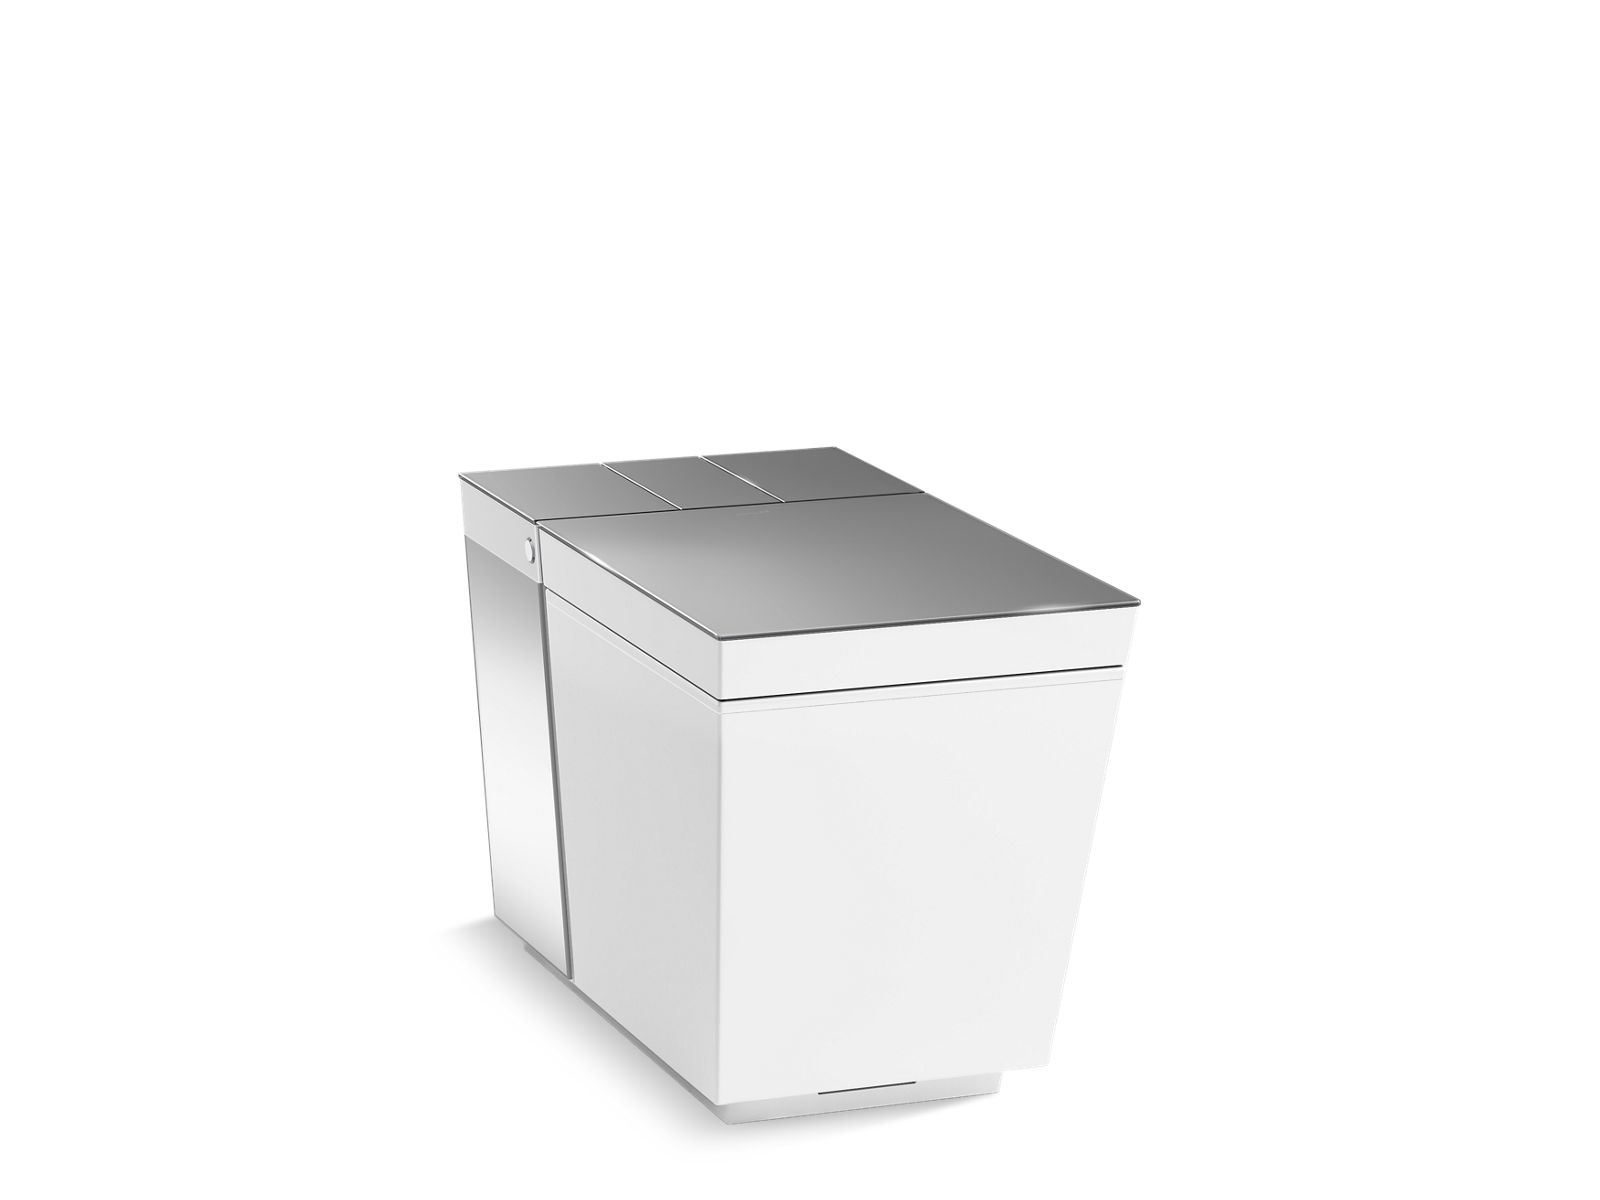 Kohler Numi 2.0 est la toilette intelligente avec Alexa, des lumières LED  et un prix astronomique - GizChina.it